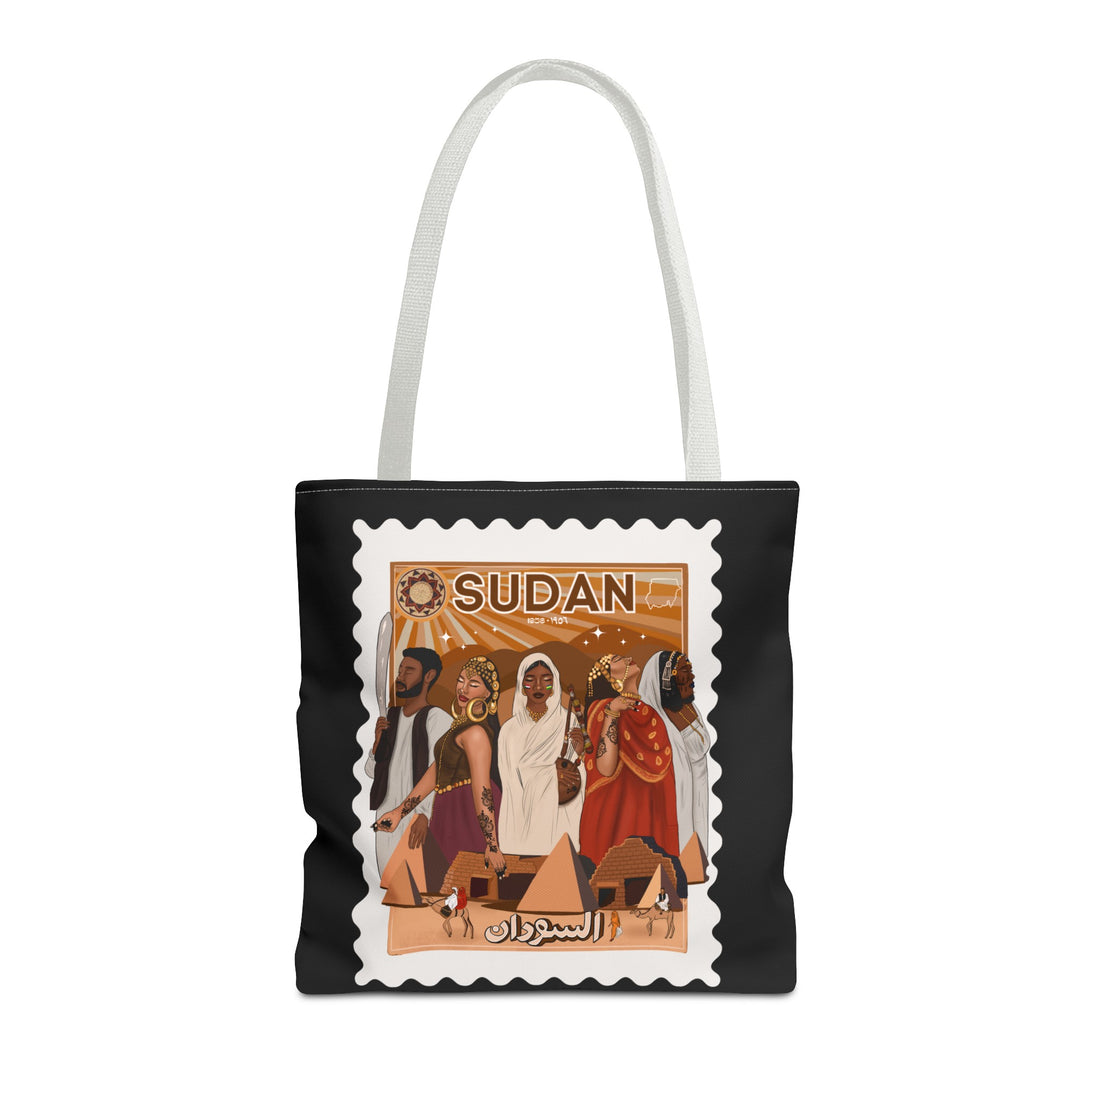 Sudan - Black Tote Bag